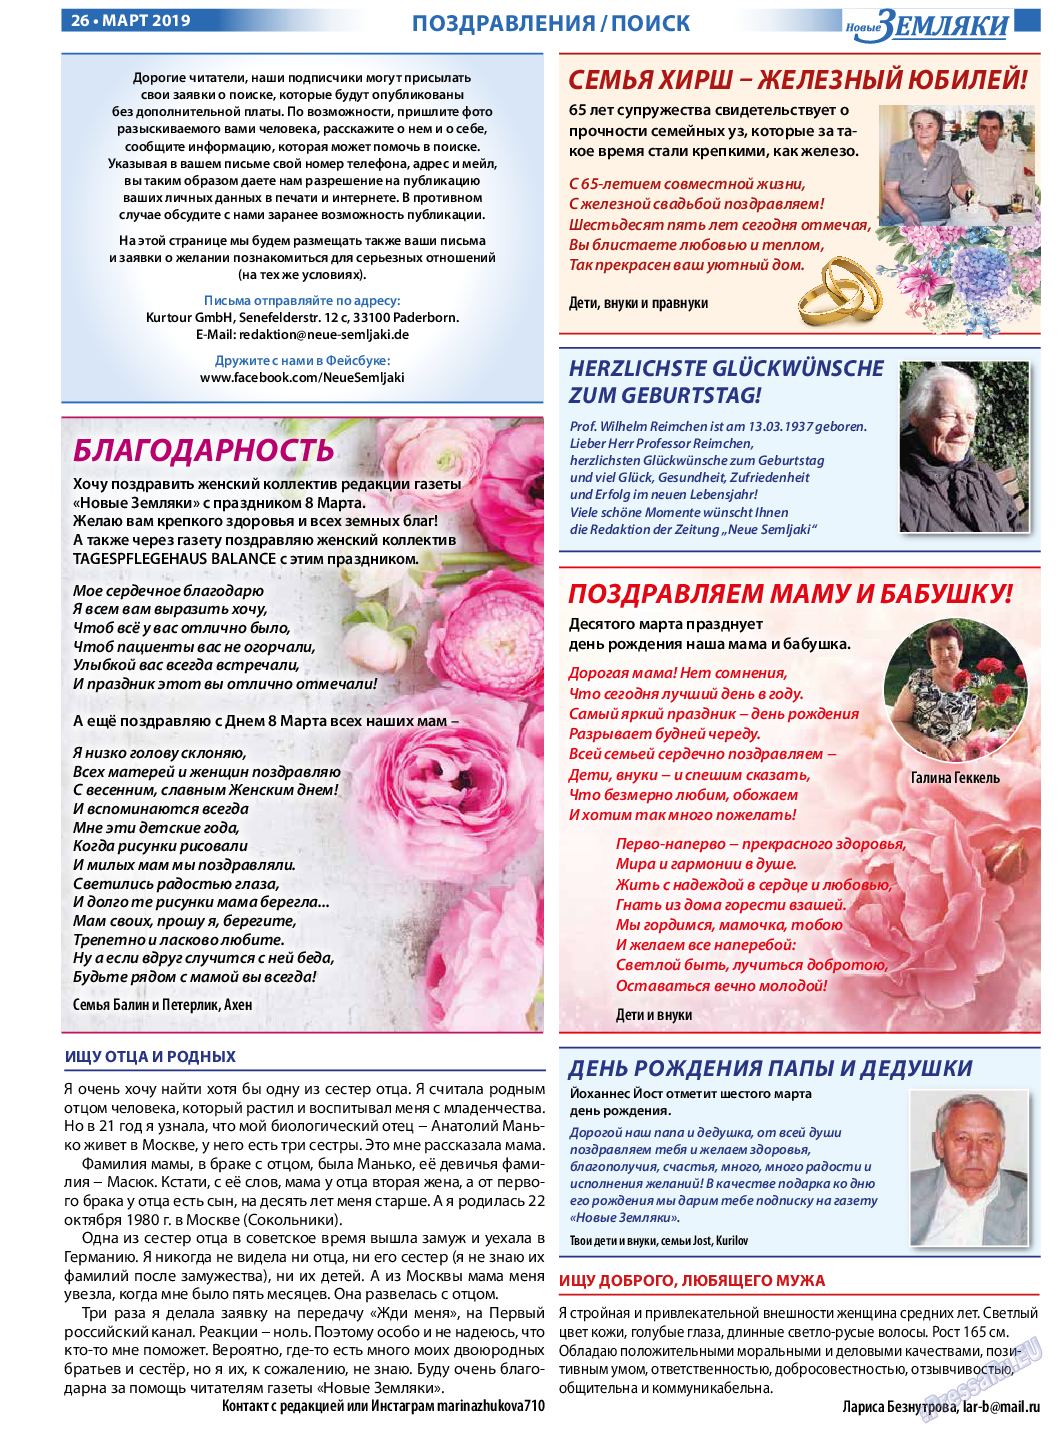 Новые Земляки, газета. 2019 №3 стр.26